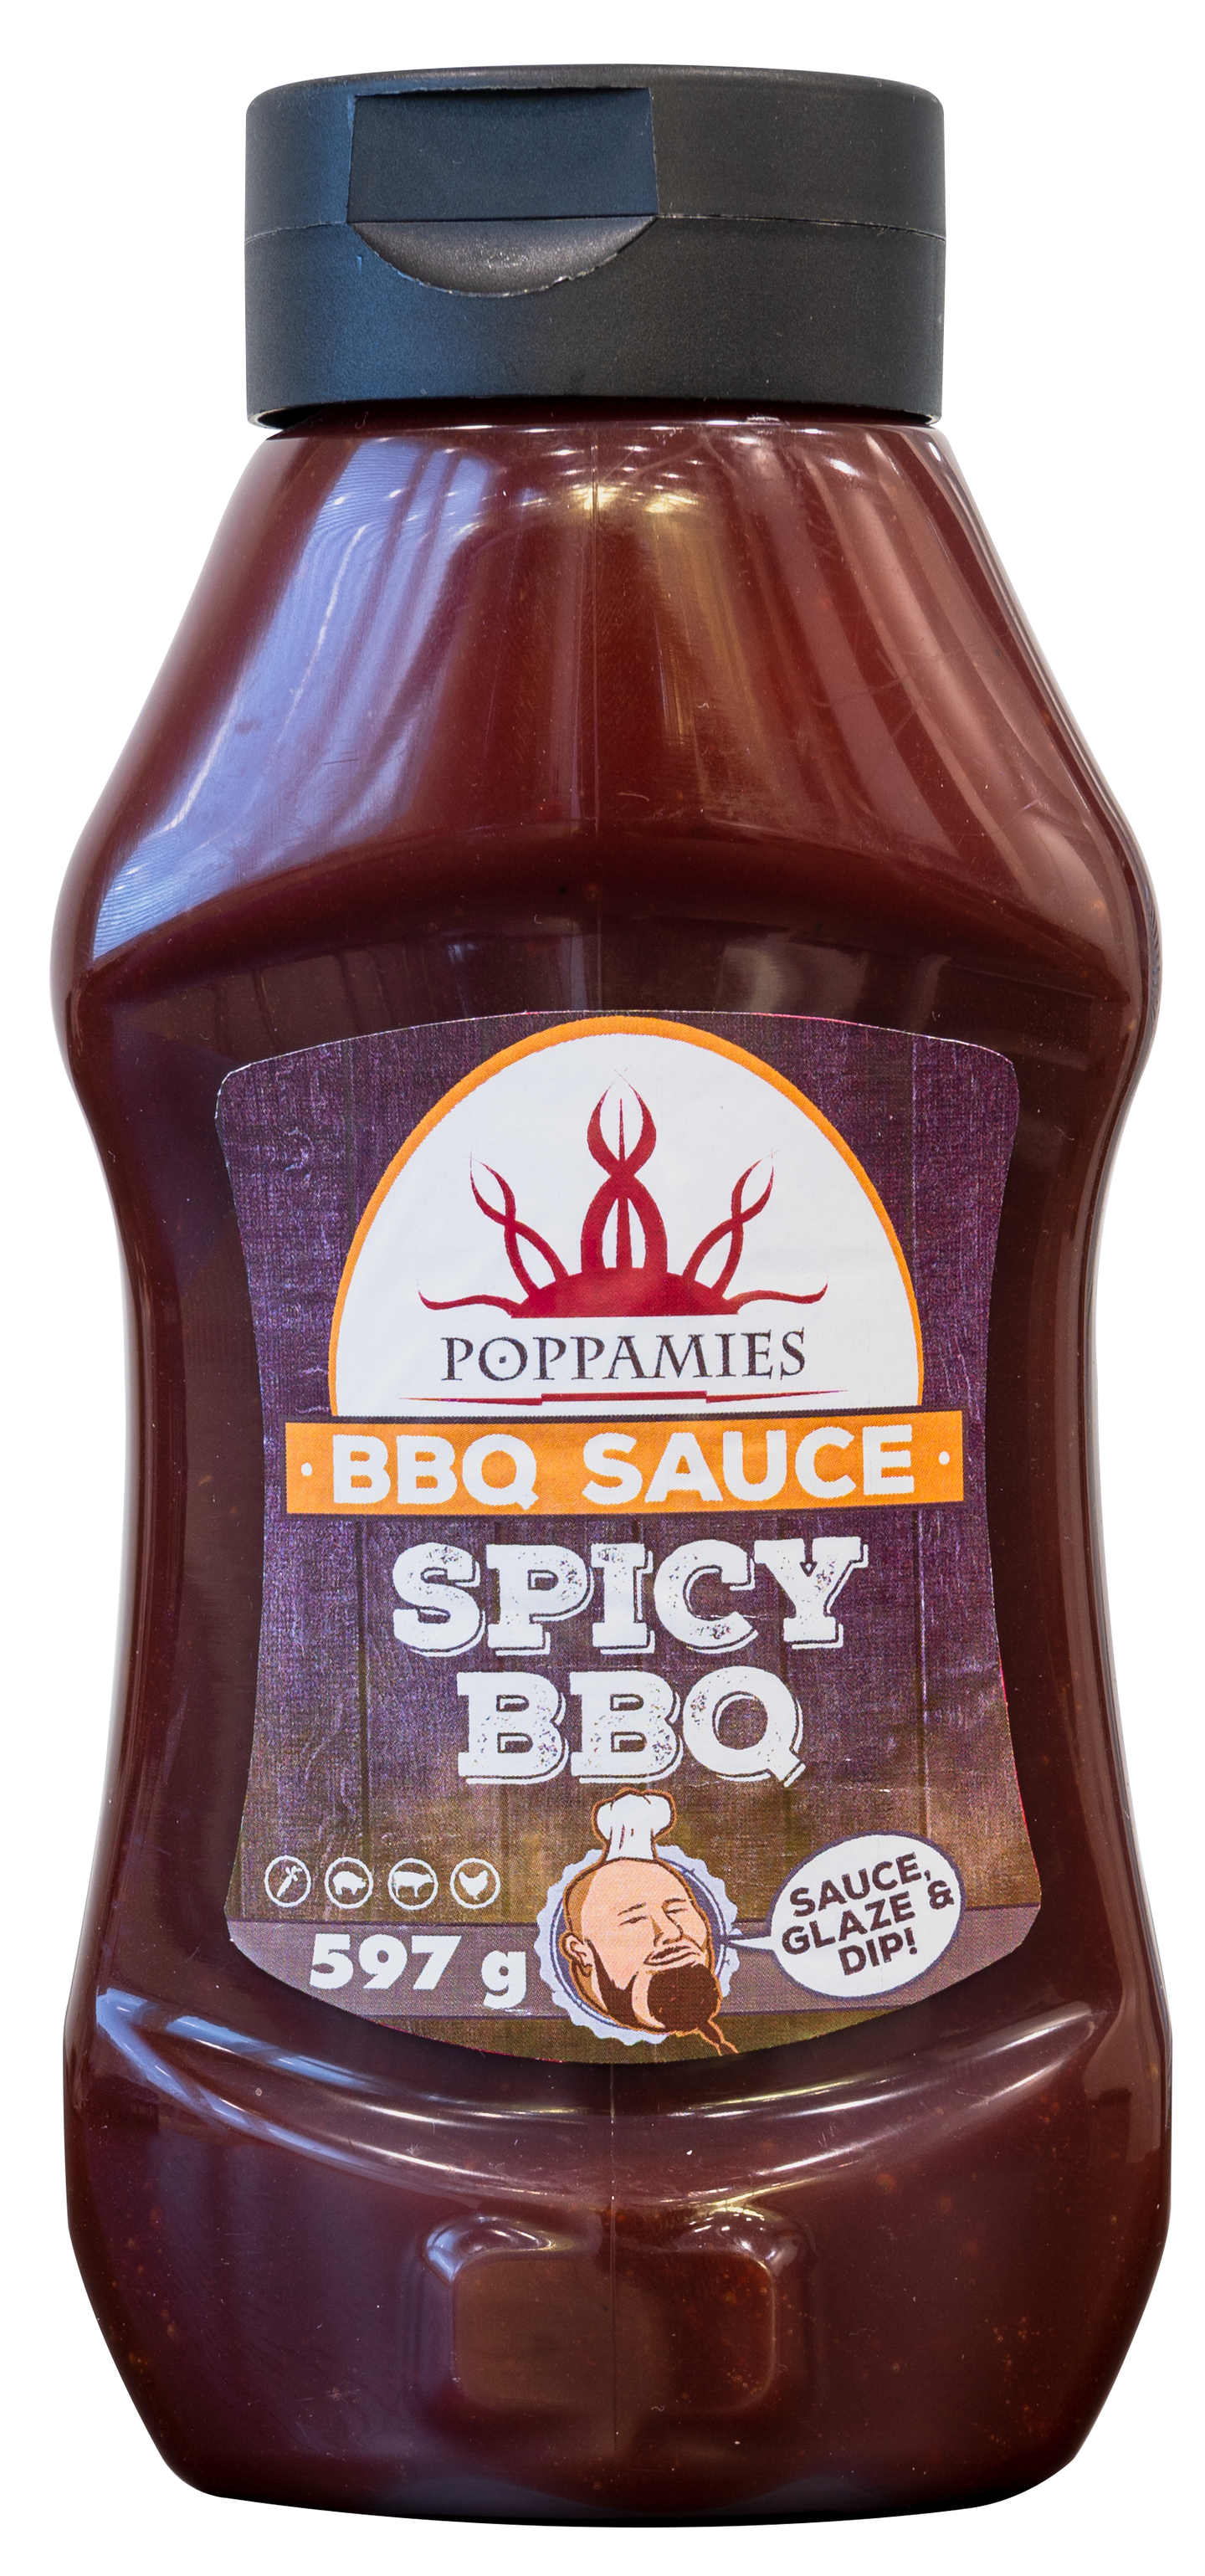 Poppamies Spicy BBQ 597g